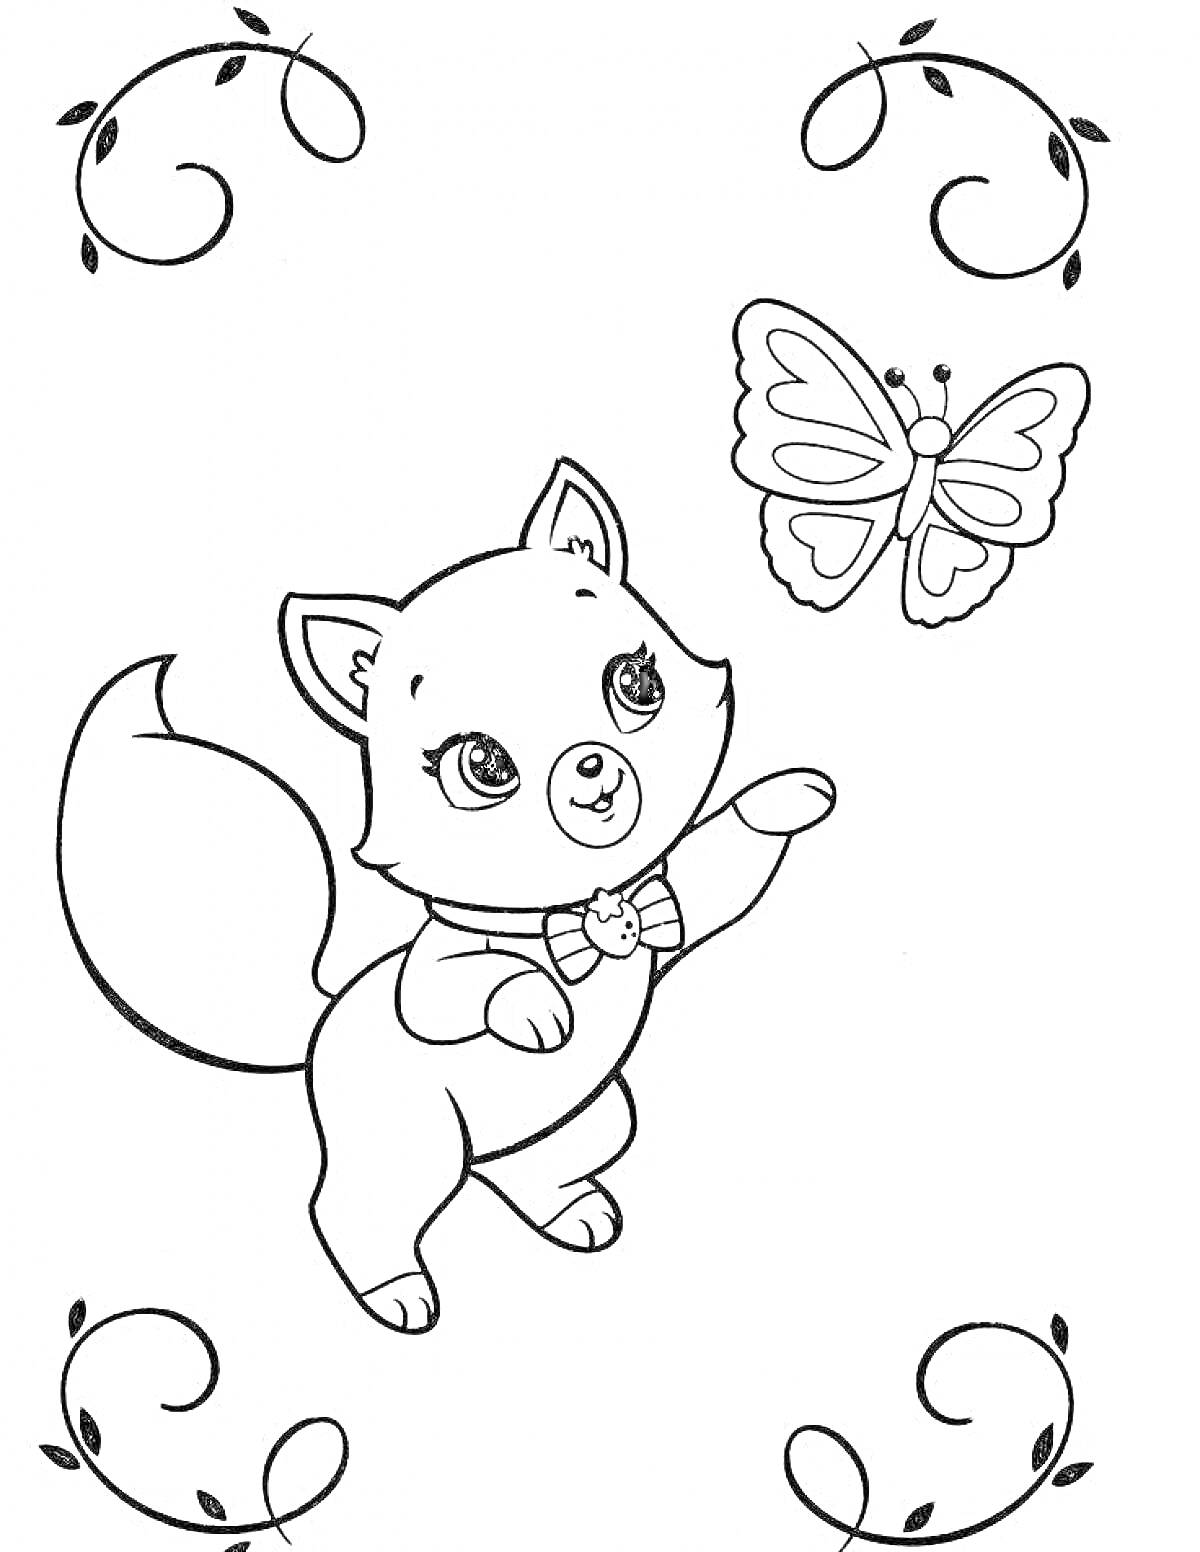 Раскраска Кошечка играет с бабочкой, украшенной рамкой из узоров